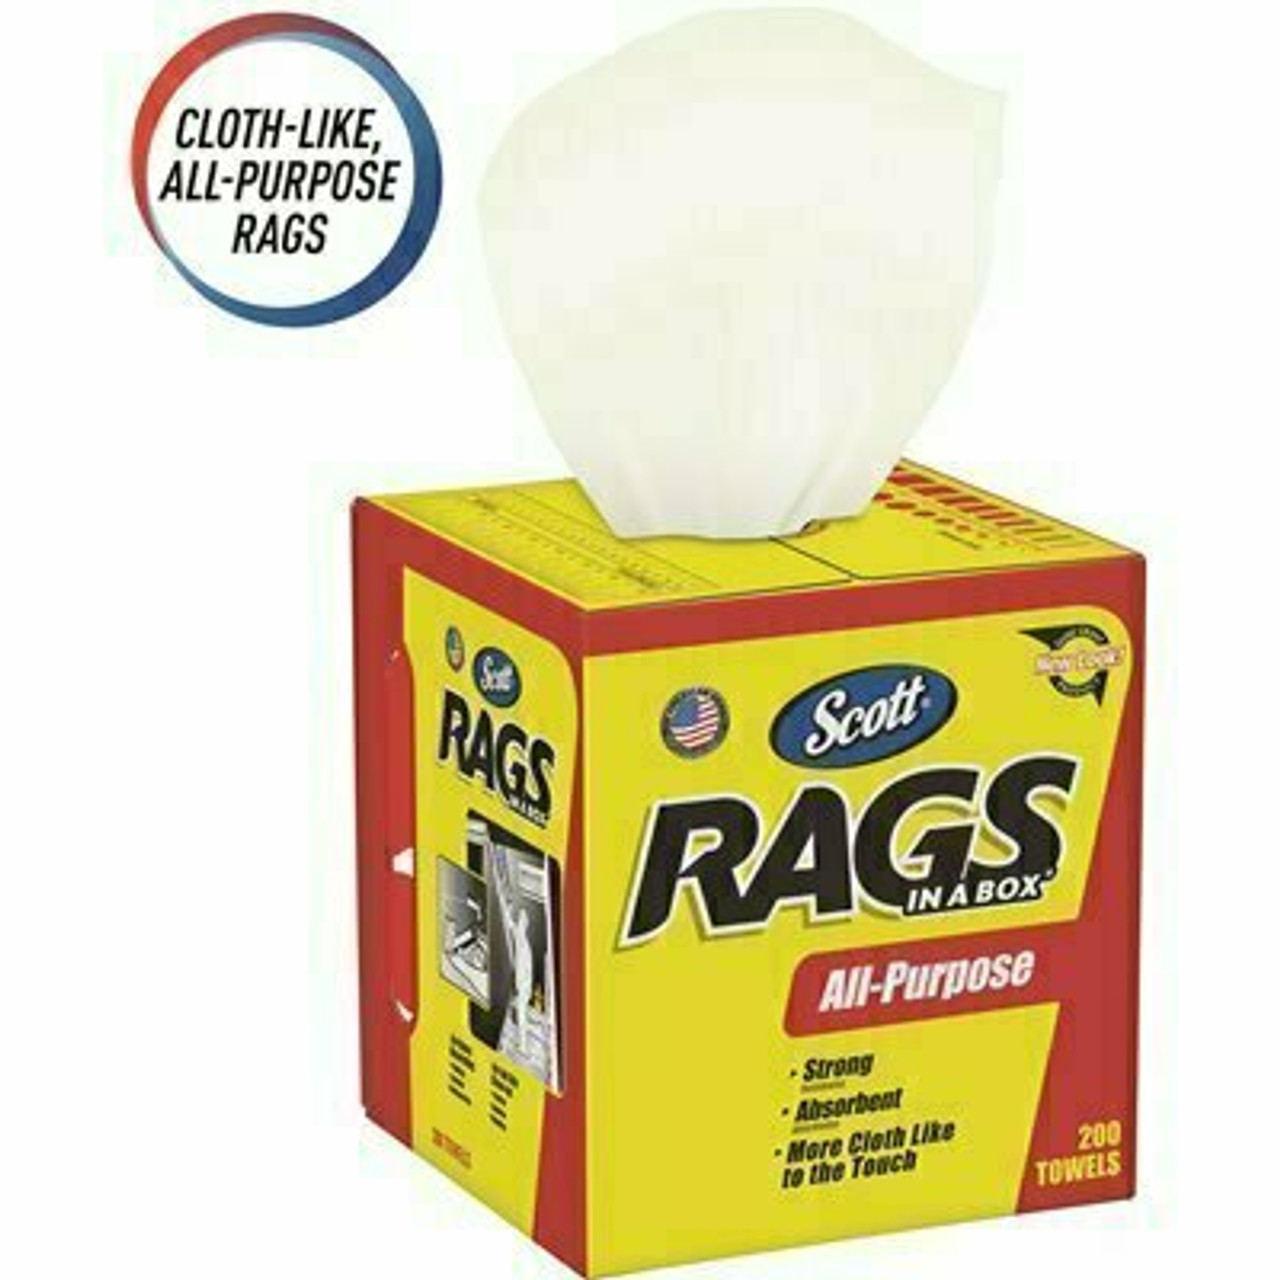 Scott Rags In A Box In White (200-Shop Towels Per Box)